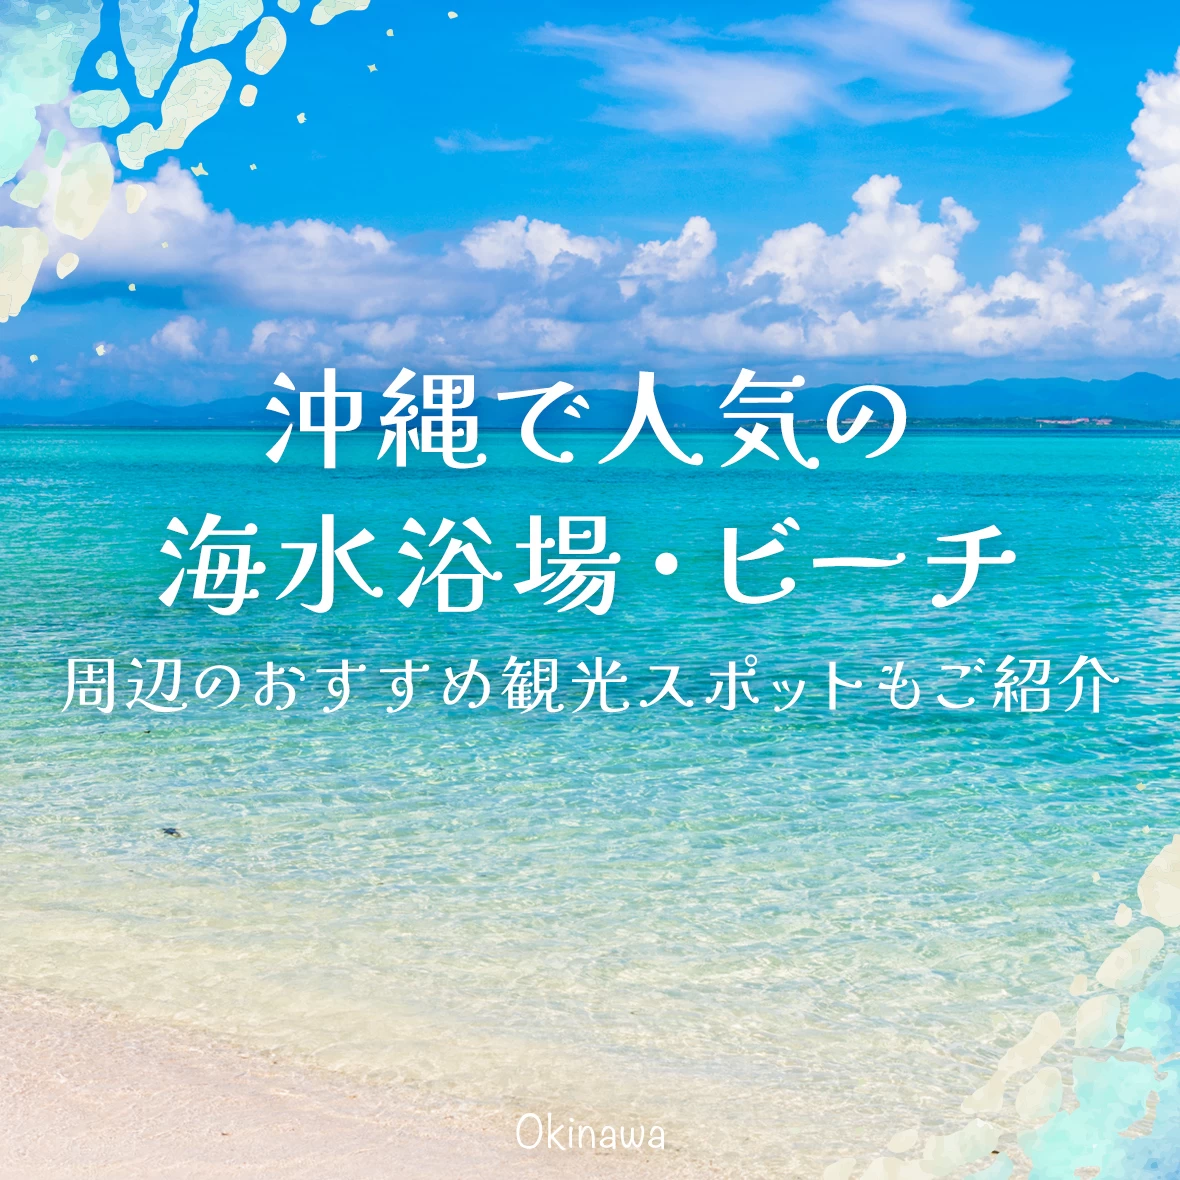 【沖縄】人気のビーチ・海水浴場17選 周辺のおすすめ観光スポットもご紹介